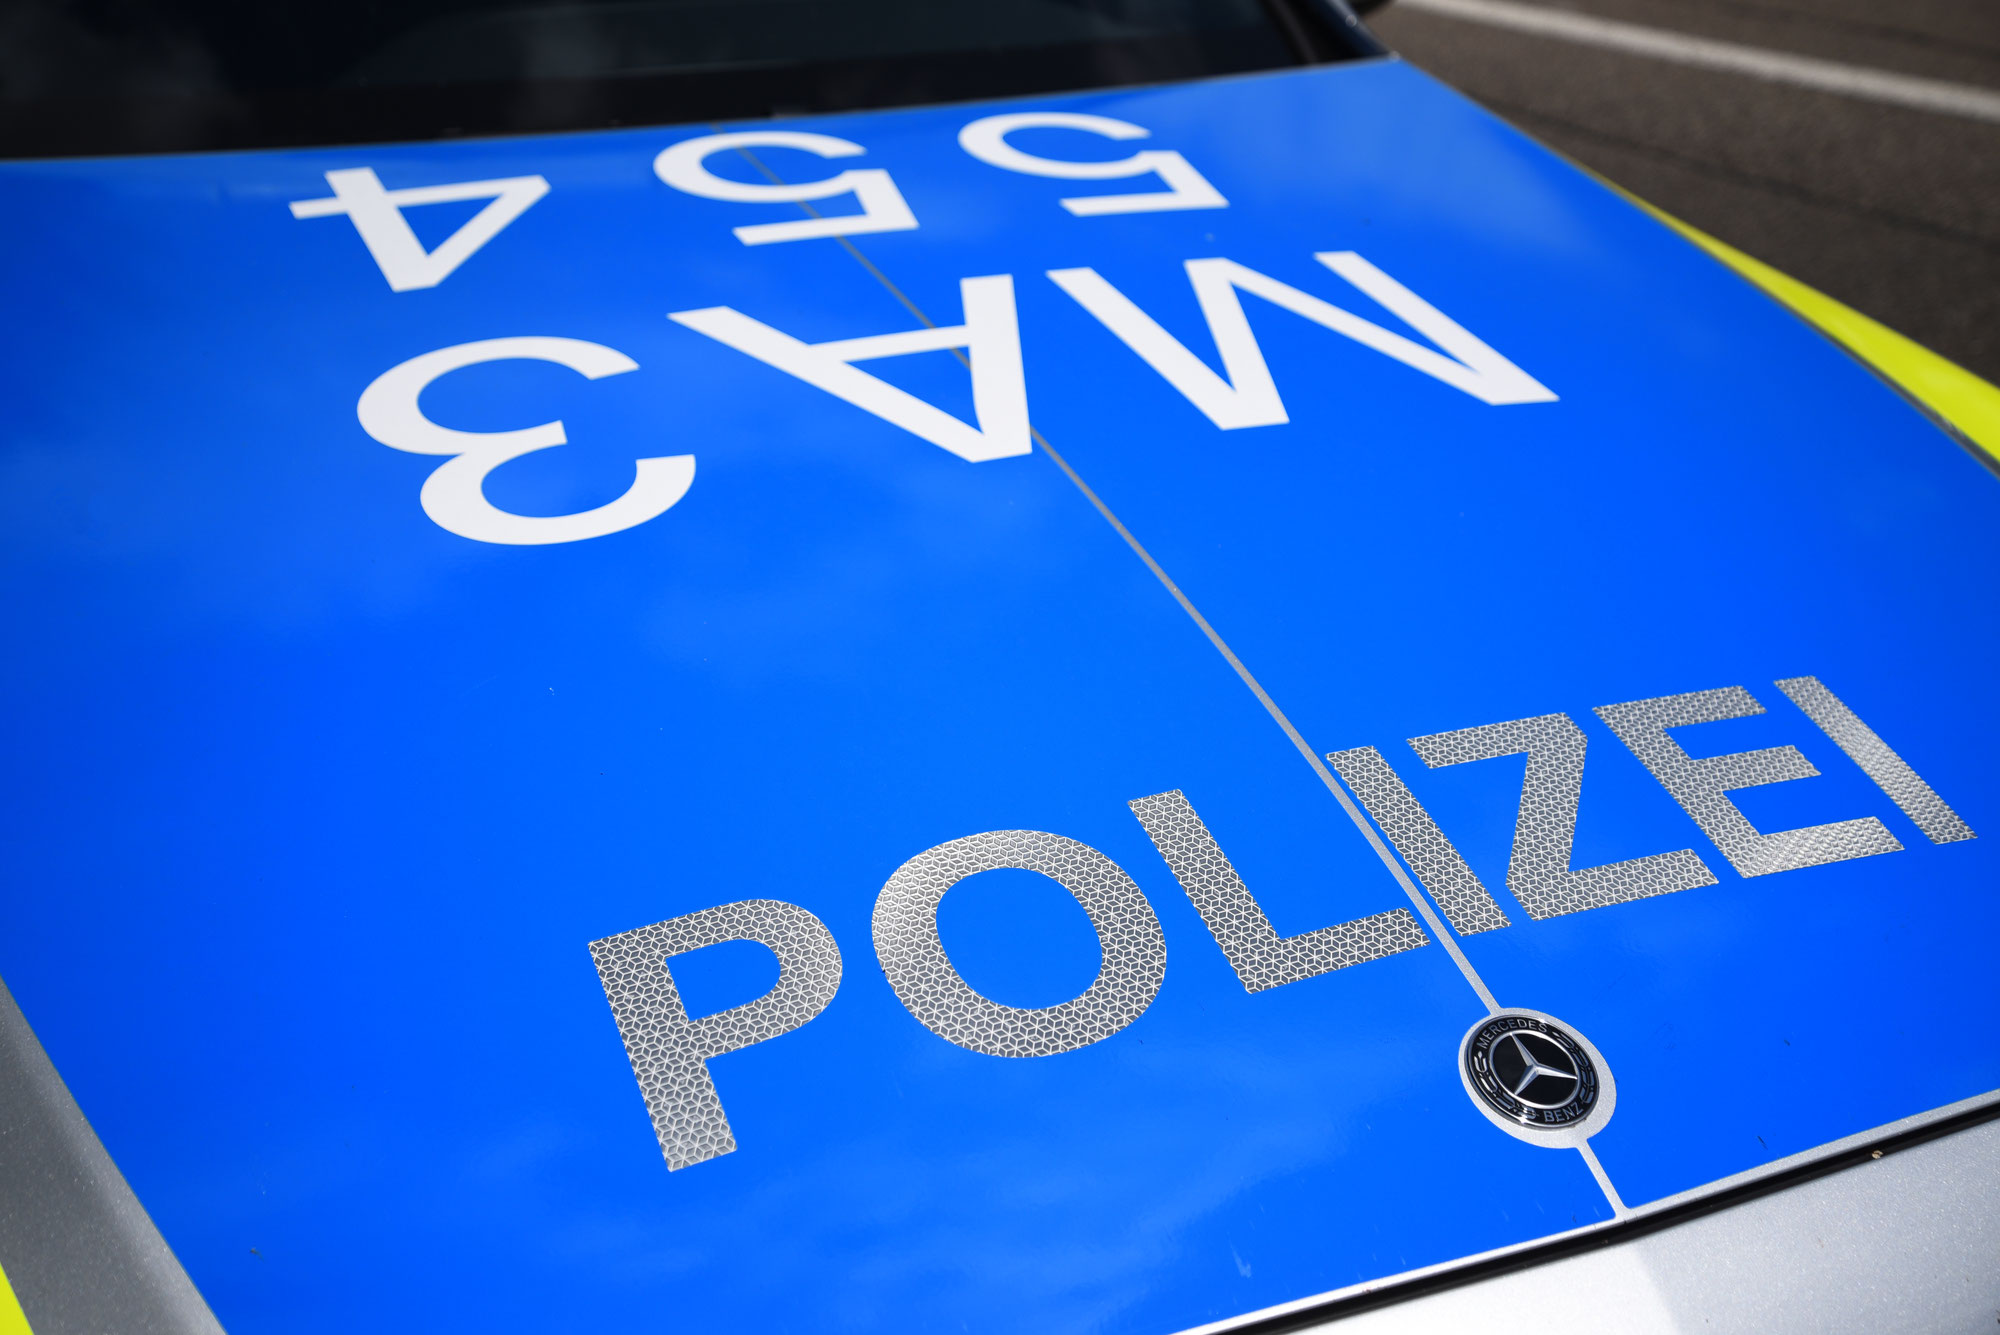 Sandhausen, Rhein-Neckar-Kreis: Unbekannte brechen Transporter auf und entwenden Werkzeuge - Polizei bittet um Hinweise!